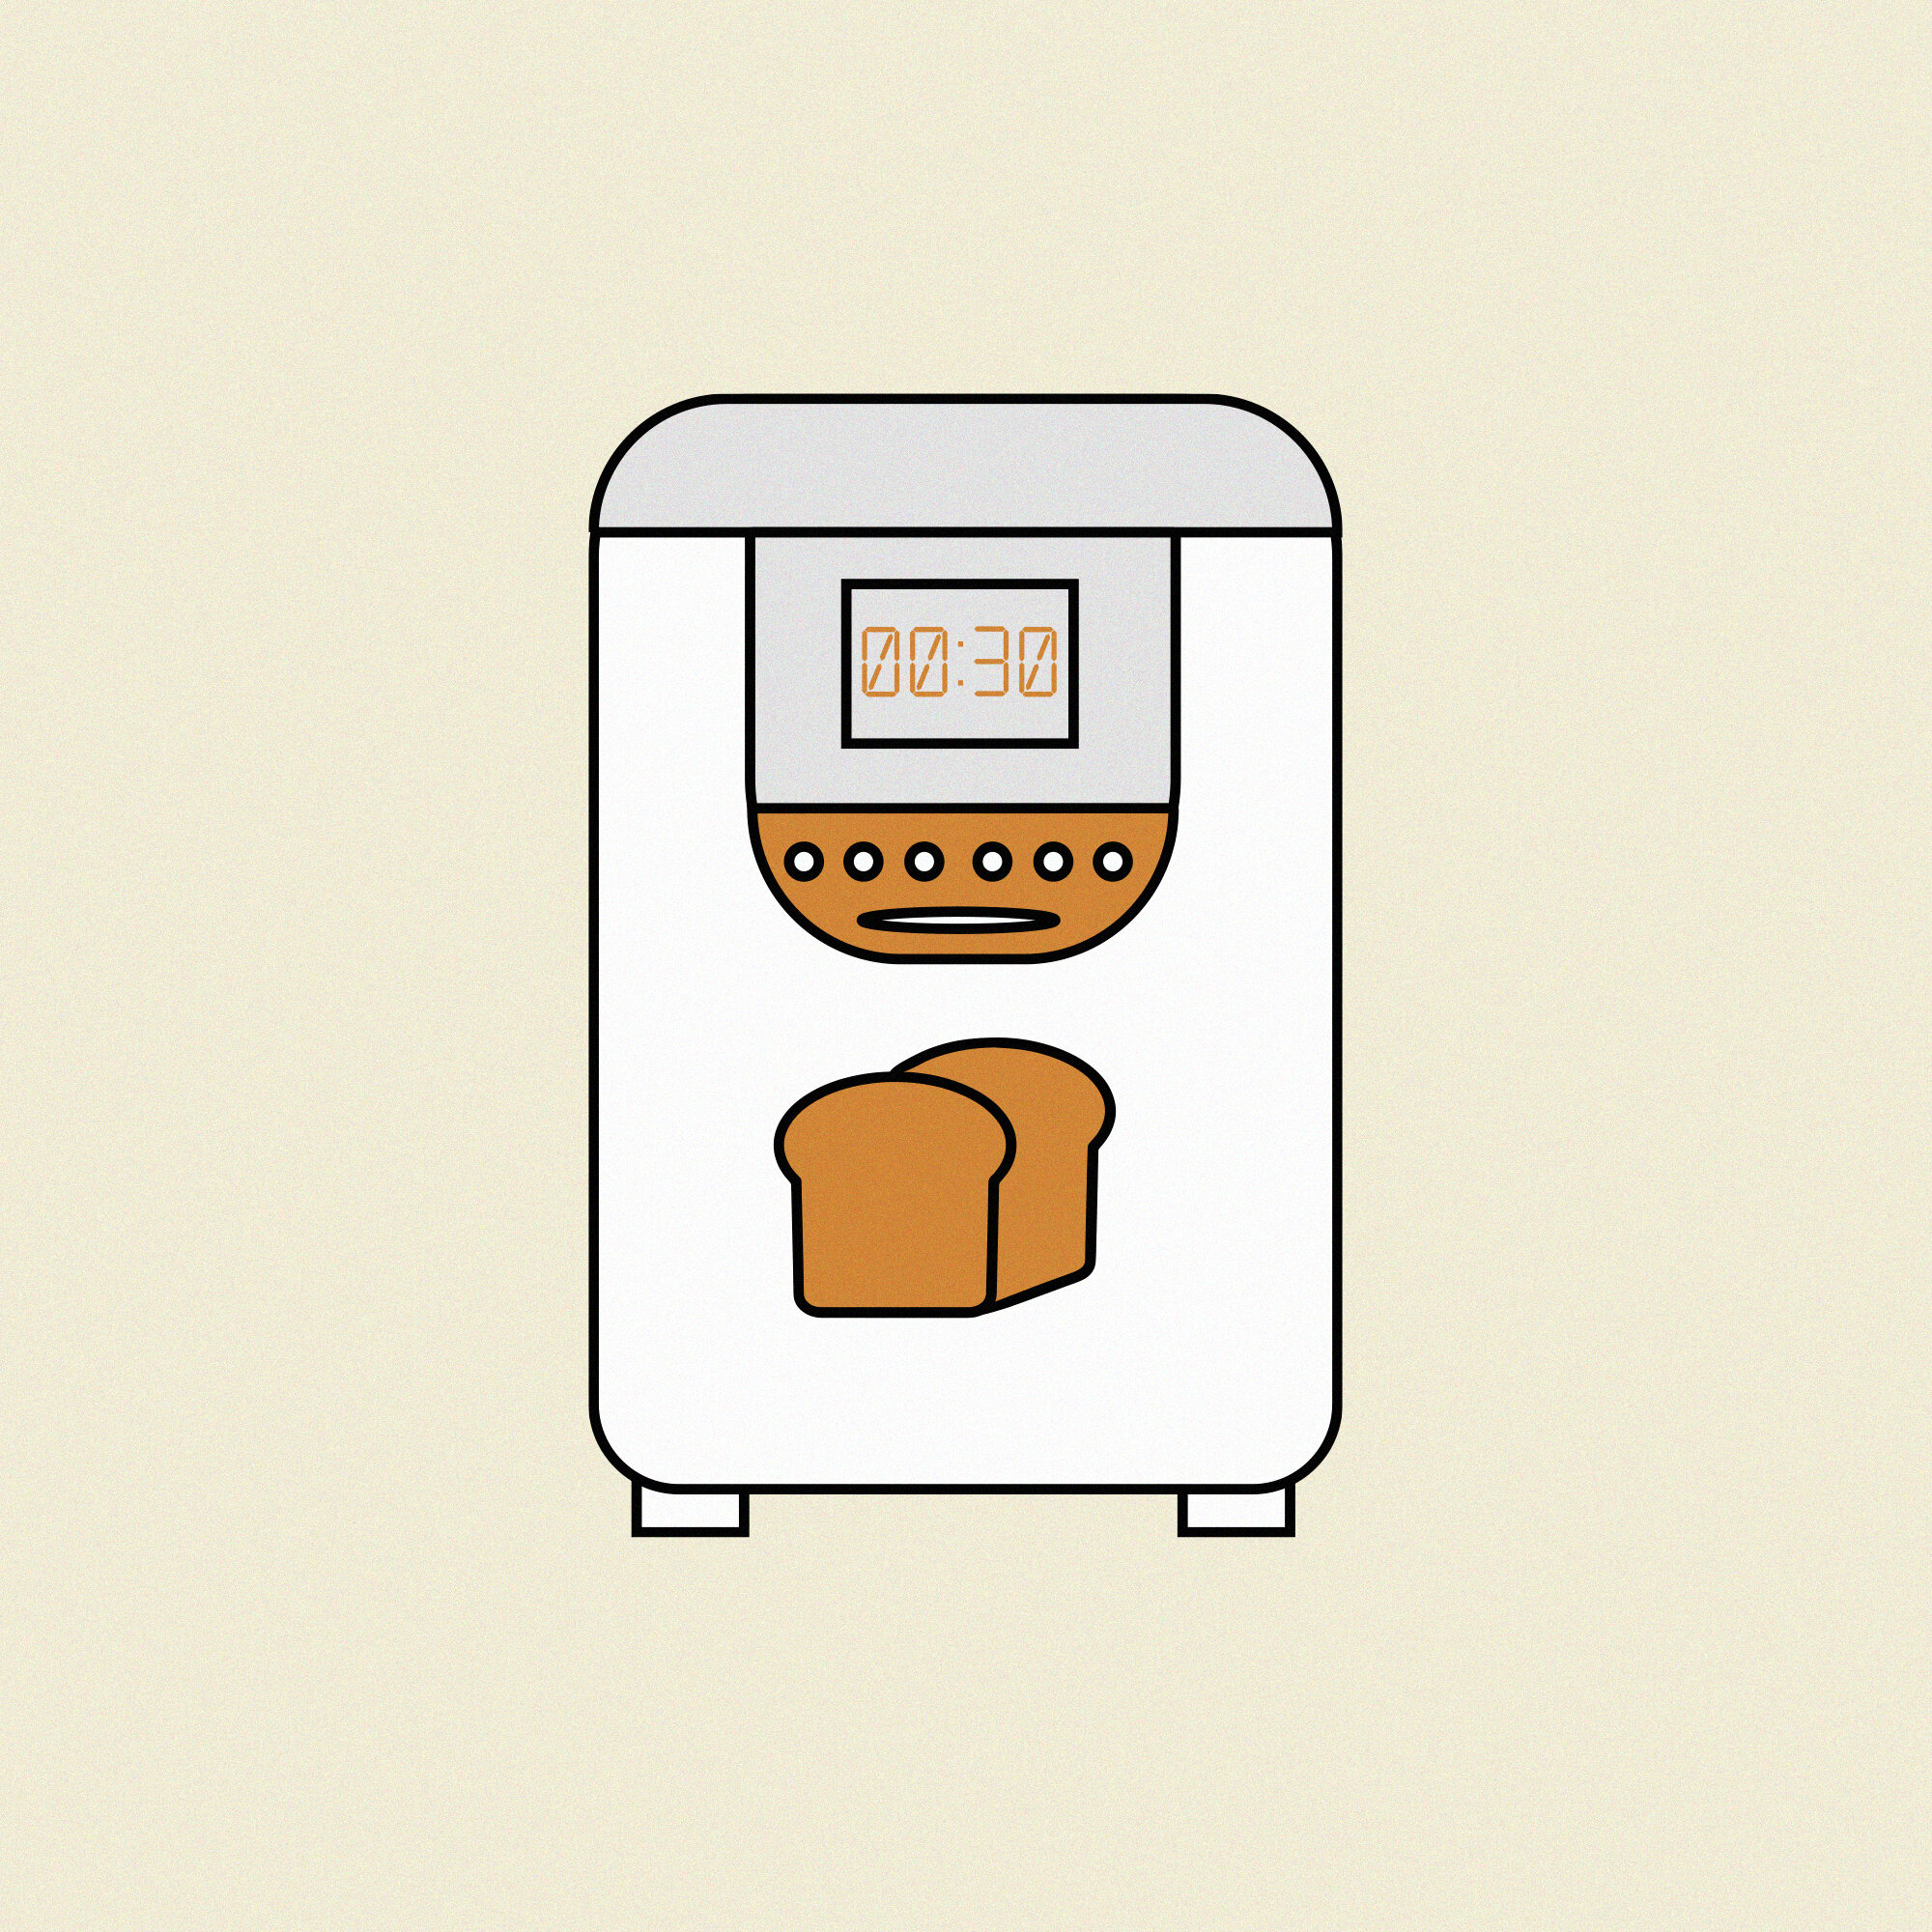 breadmaker.jpg